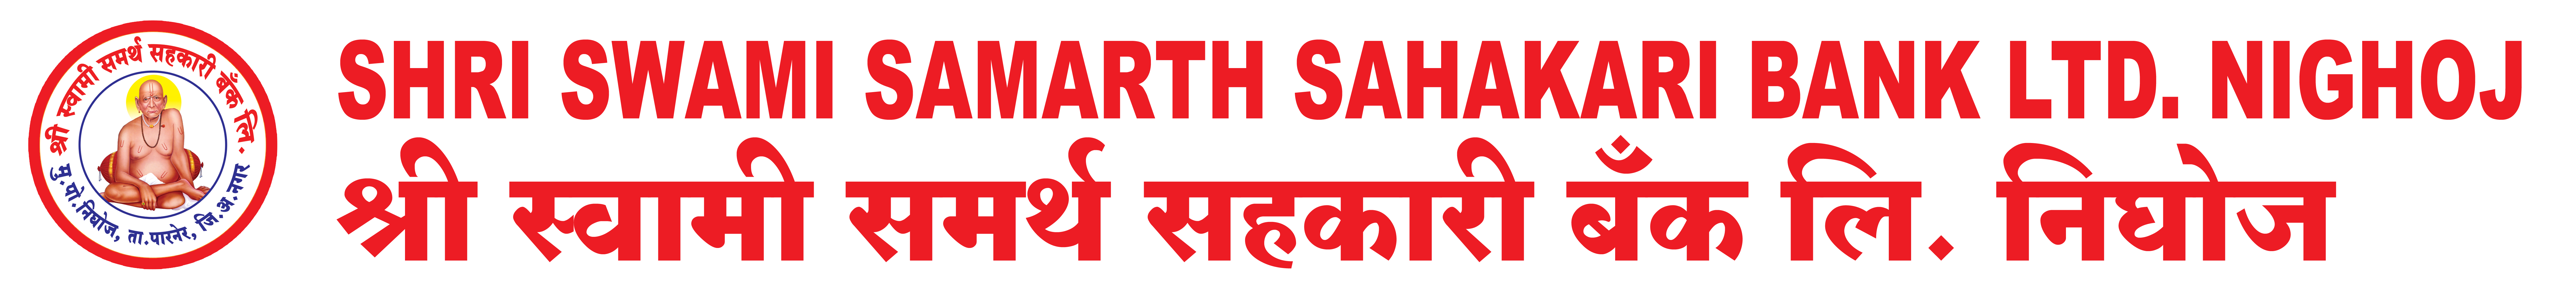 Shri Swami Samarth Sahakari Bank Ltd